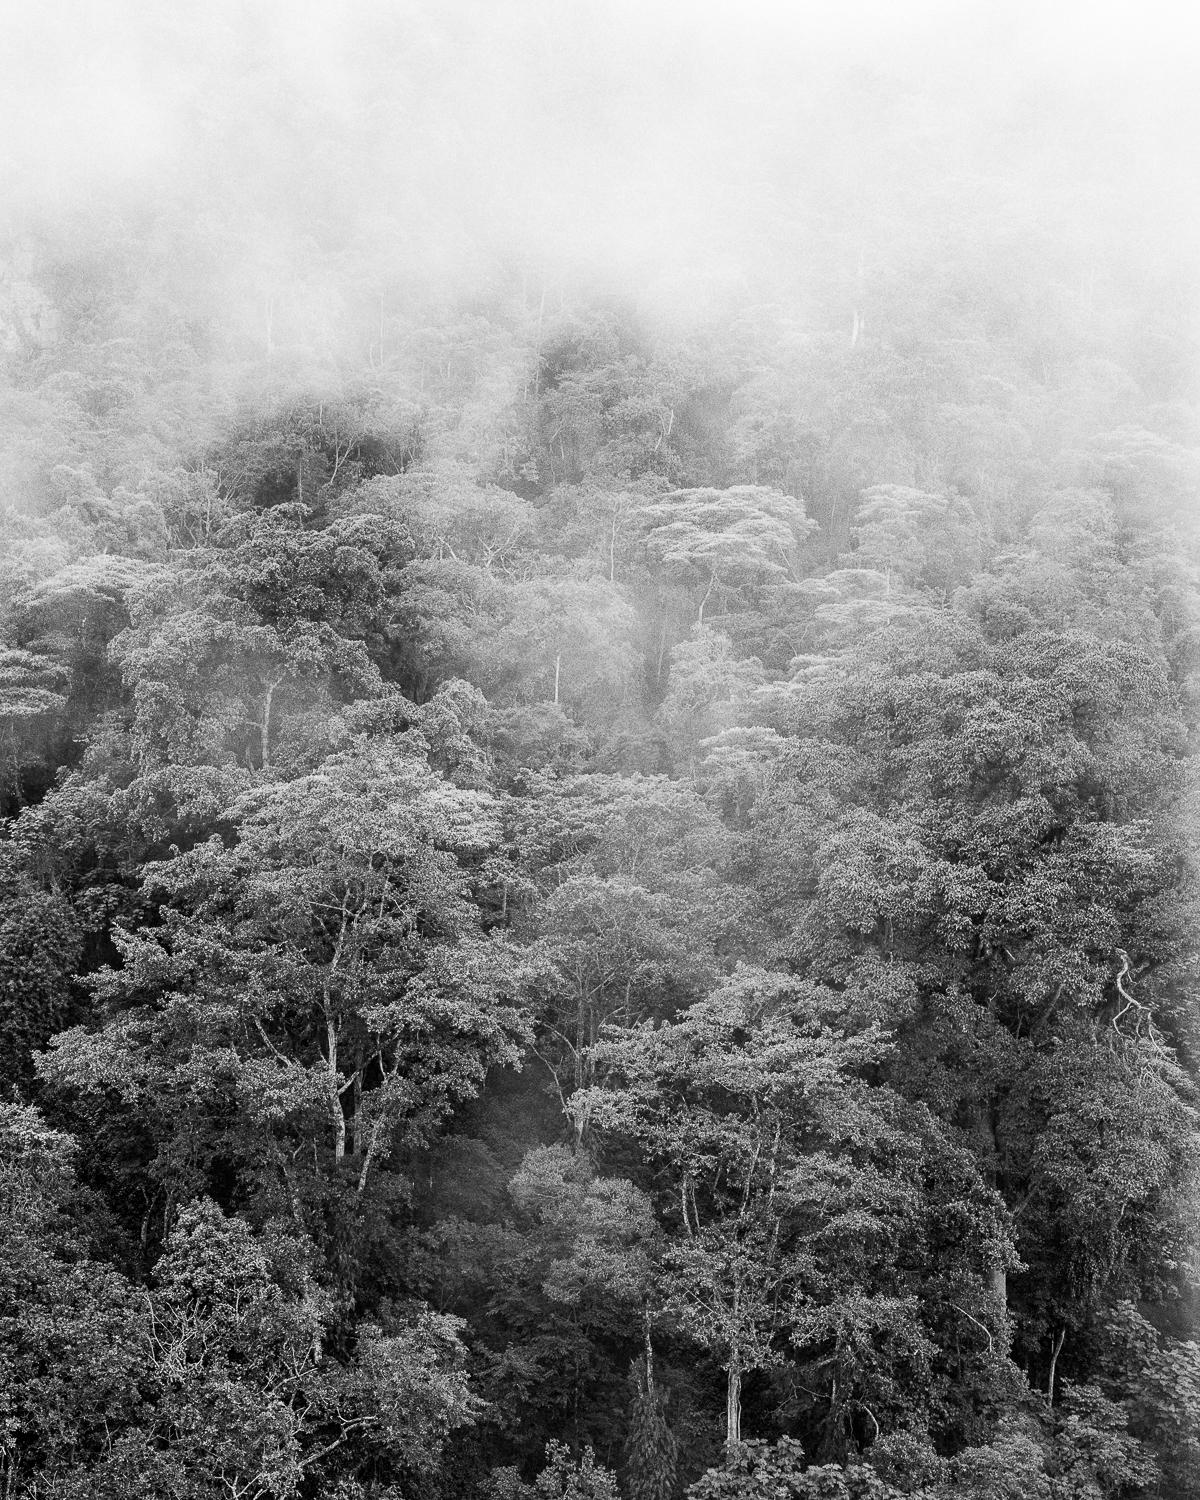 Miguel Winograd  Landscape Photograph - Bosque de niebla II Chicaque, Silver Gelatin Print